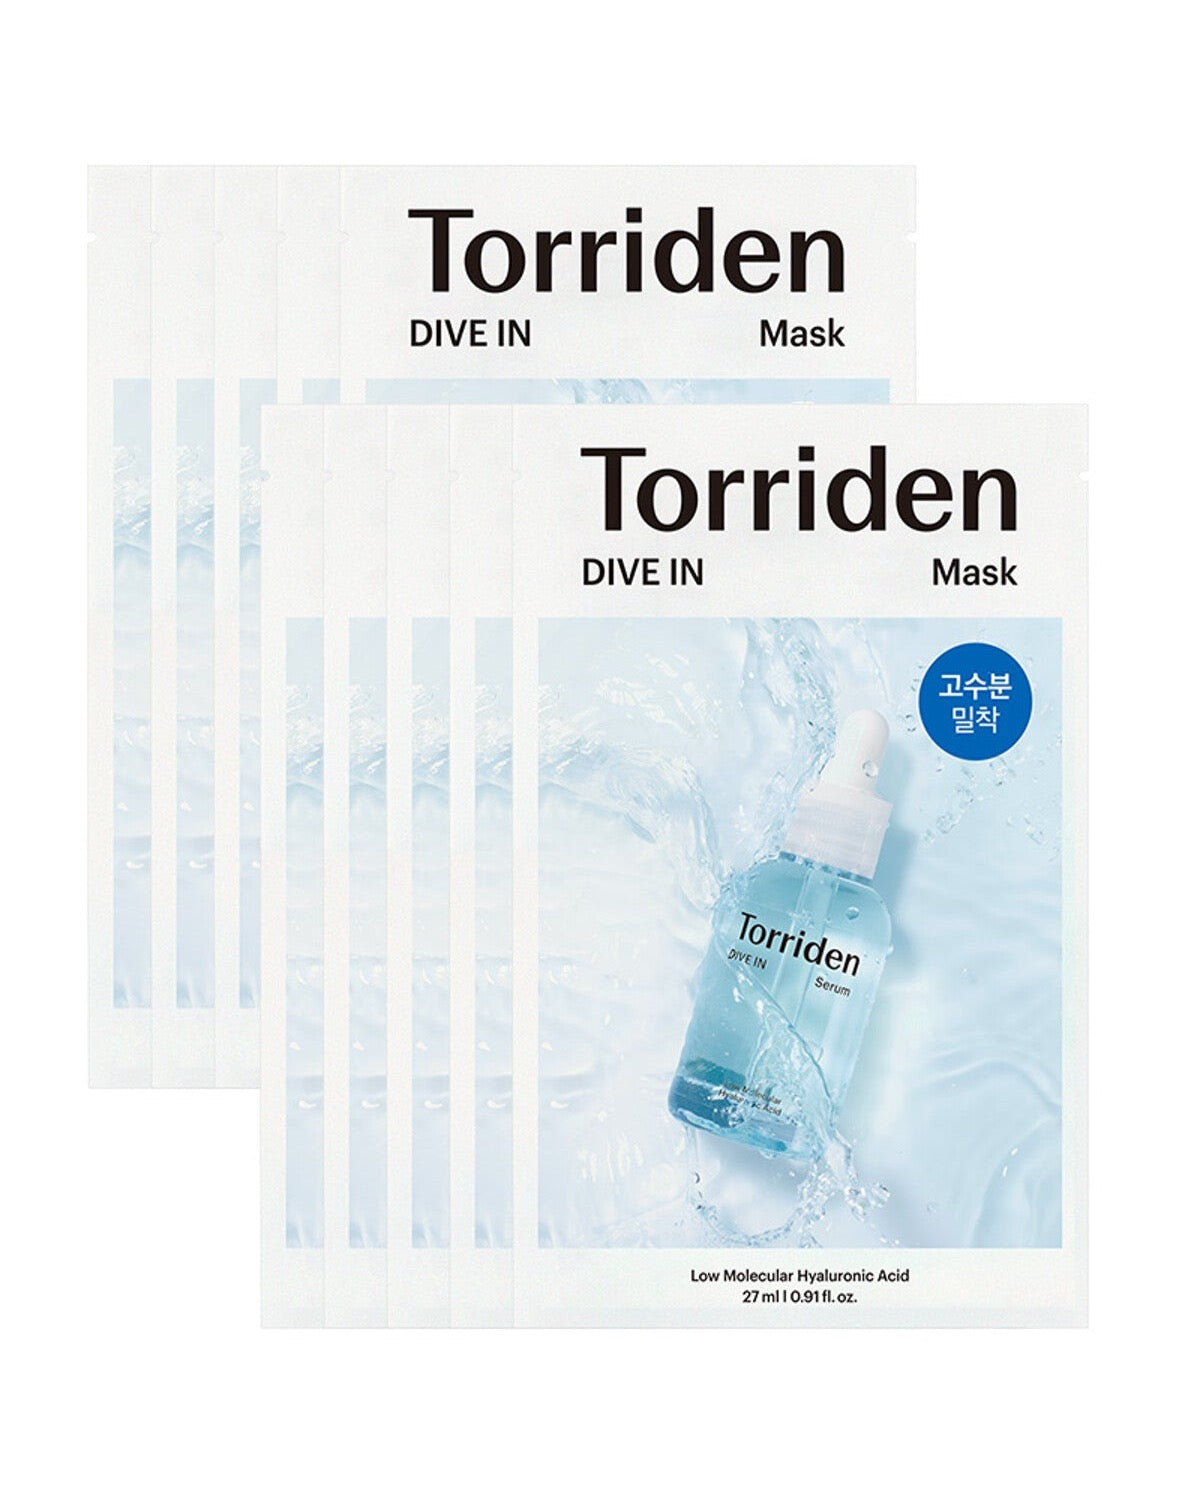 Torriden Dive-In Low Molecule Hyaluronic Acid Mask Sheet 10ea